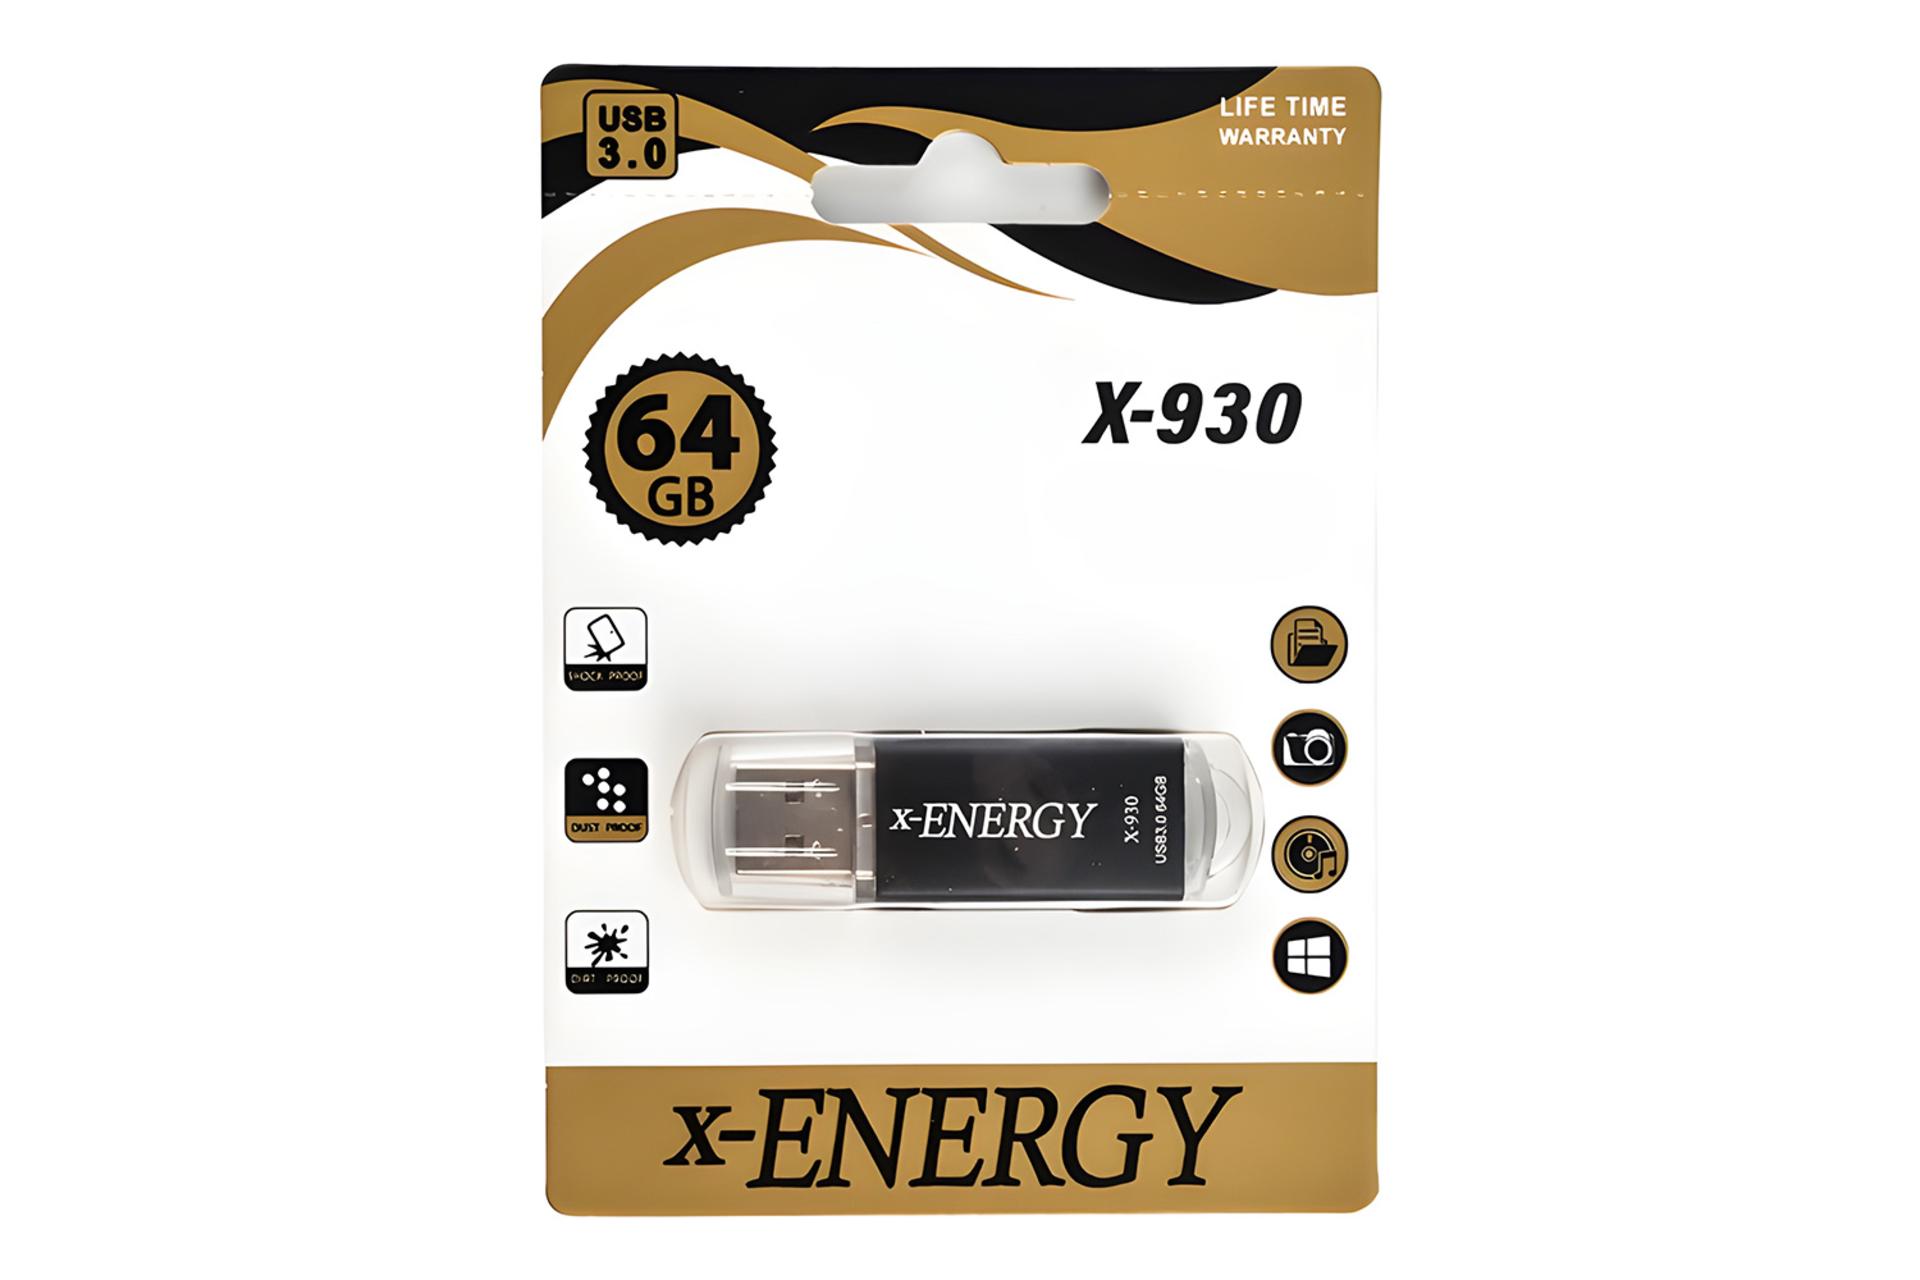 جعبه فلش مموری ایکس انرژی x-Energy X-930 64GB USB 3.0